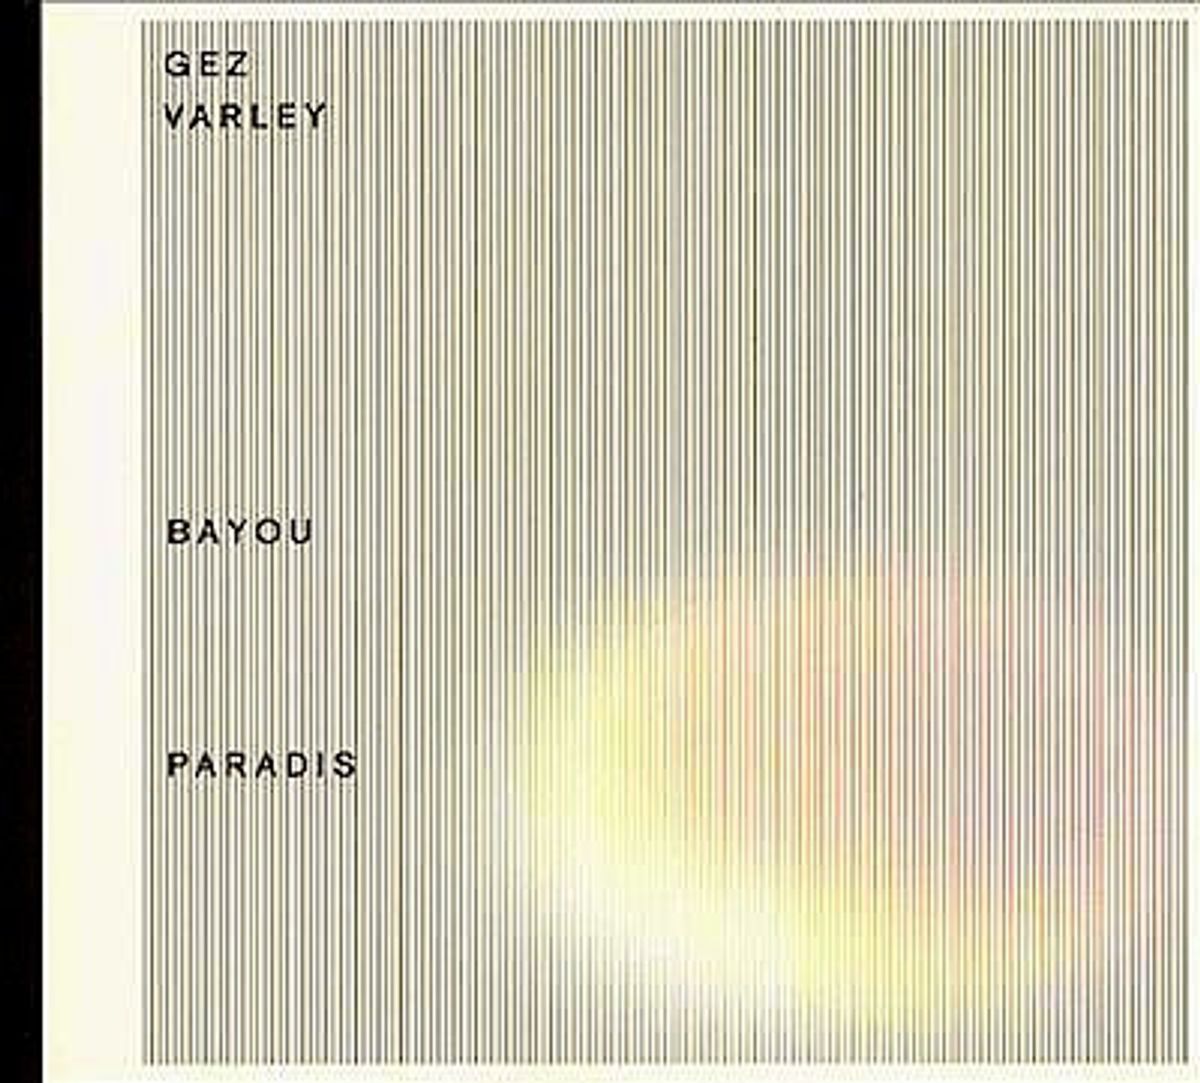 #HetHeiligeJaar2001 - Gez Varley - 'Bayou Paradis'